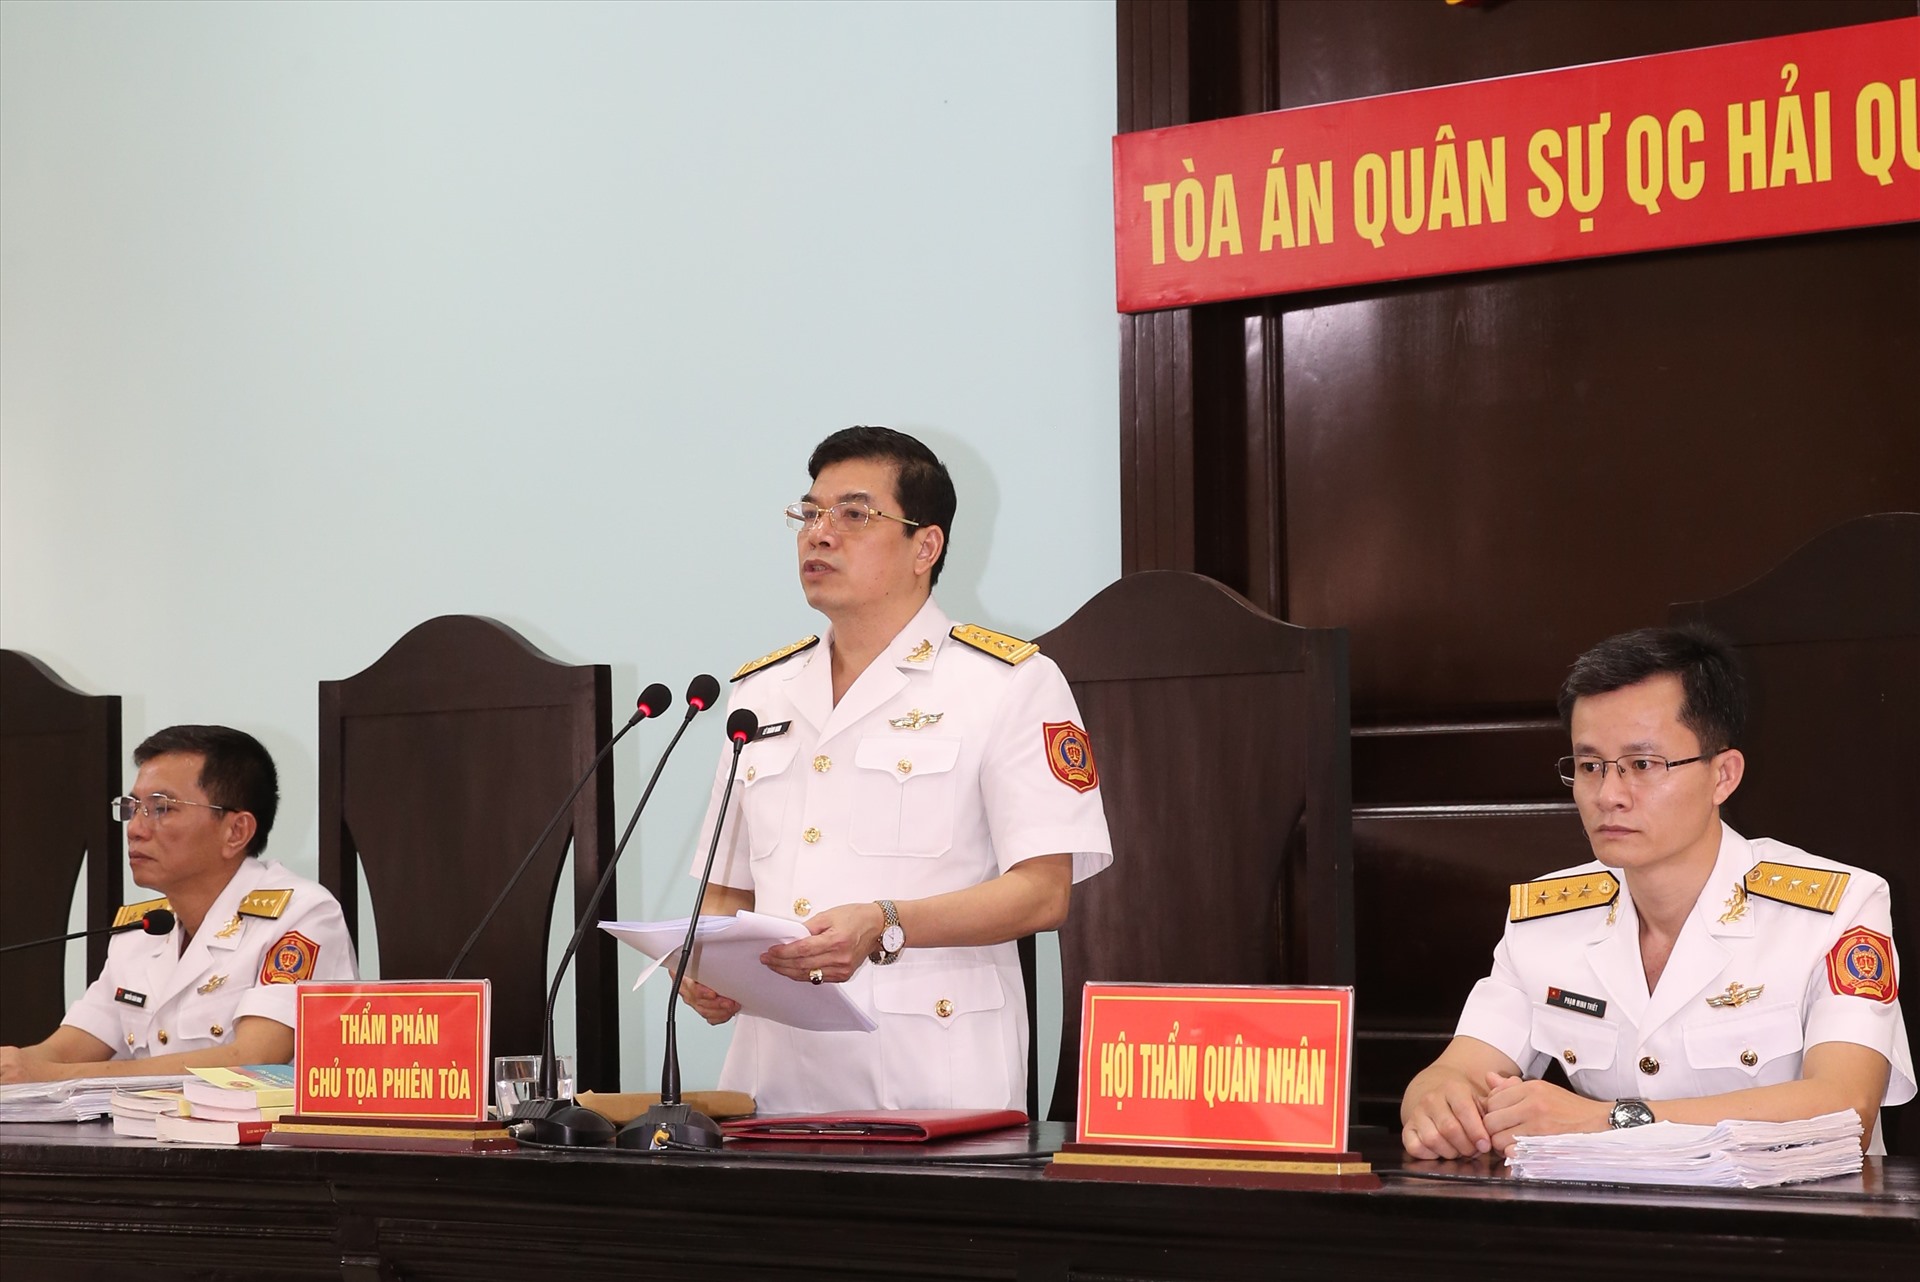 Chủ tọa Lê Thành Nam đọc bản án với các bị cáo trong vụ án sai phạm tại QCHQ. Ảnh: Thông tấn quân sự.